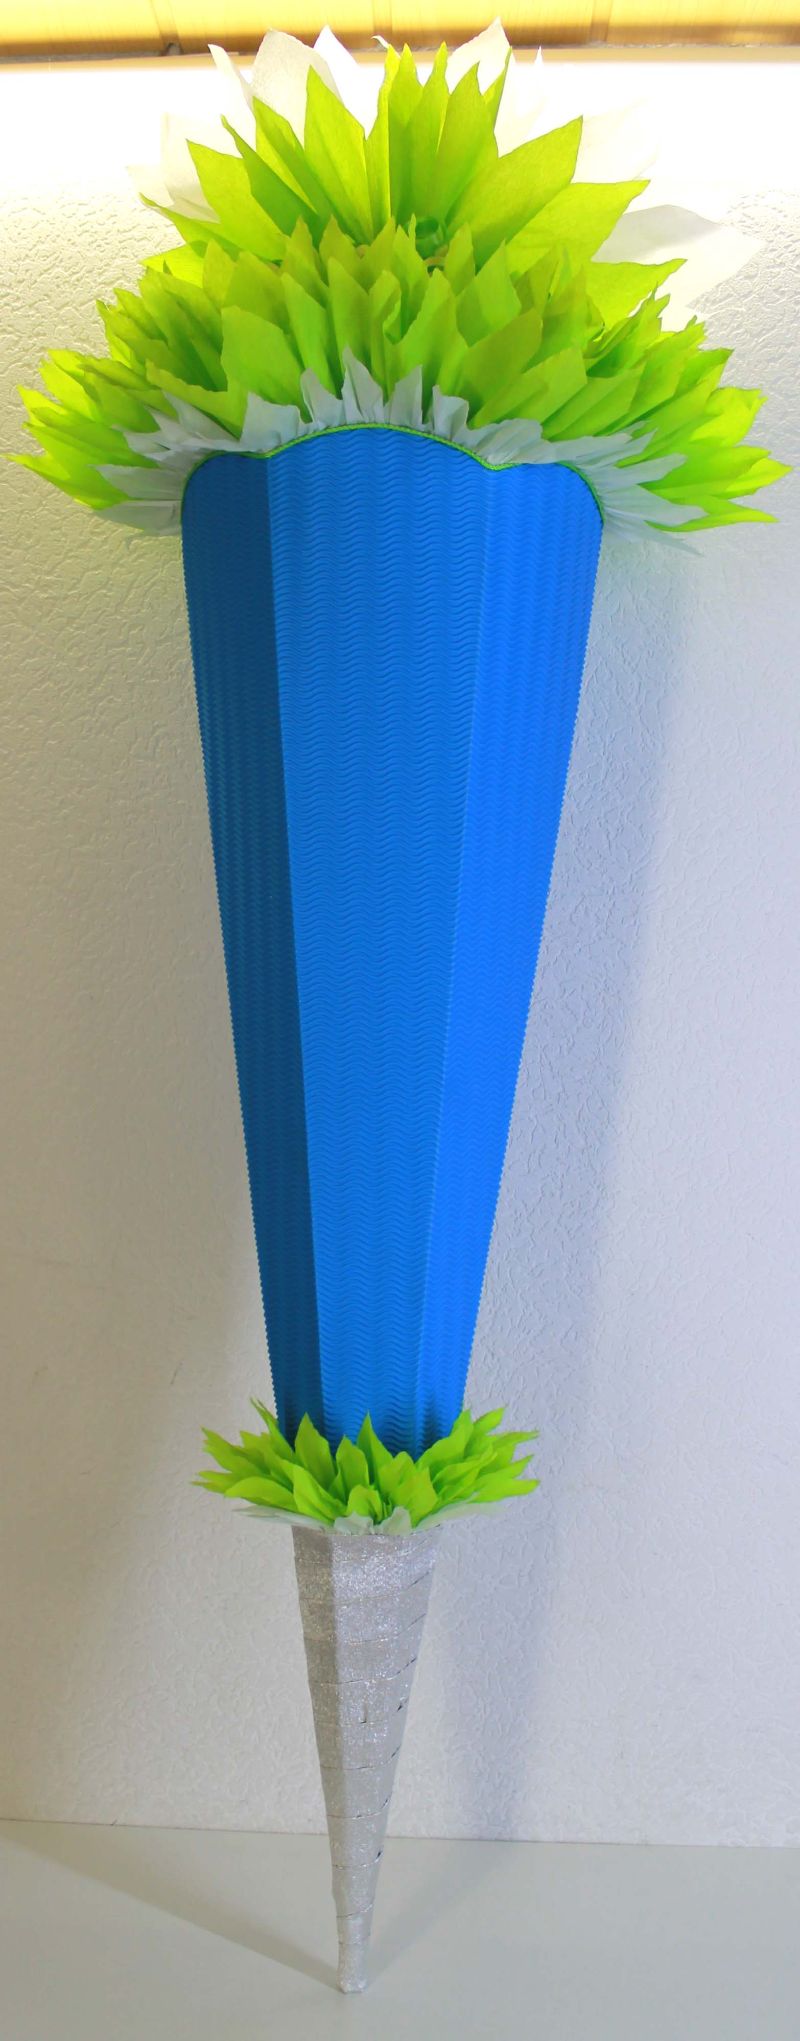  - Schultüte Zuckertüte Rohling zum selbst verzieren Rohling 70 75 80 85 90 100 cm / 1m für Jungen HANDARBEIT hellgrün blau weiß silber